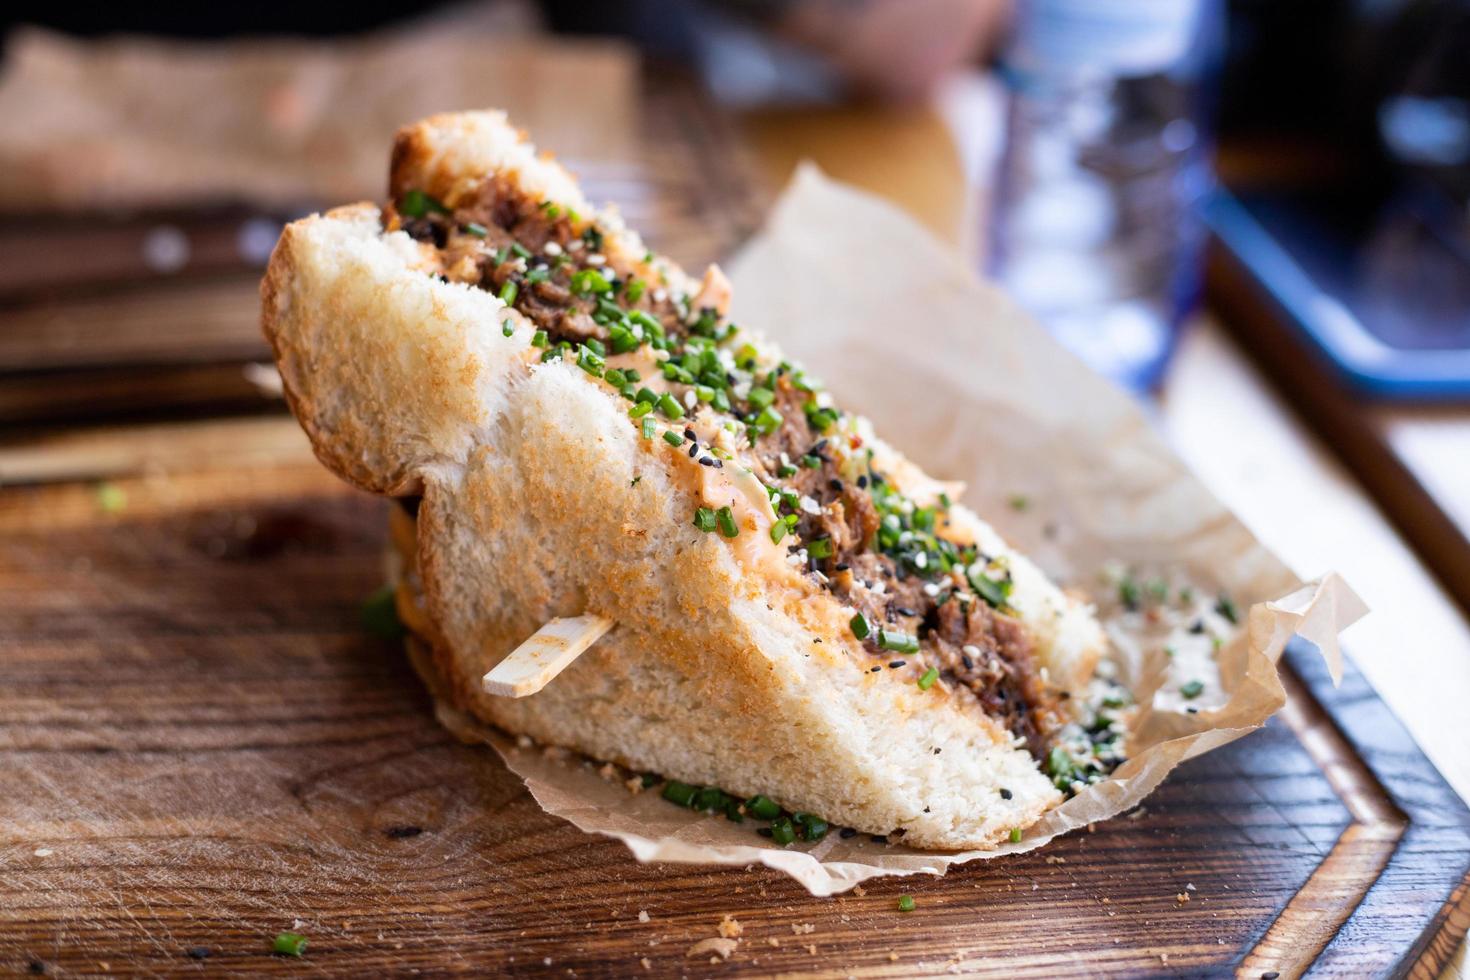 un sándwich crujiente con carne y otros ingredientes sobre la mesa de un restaurante. foto